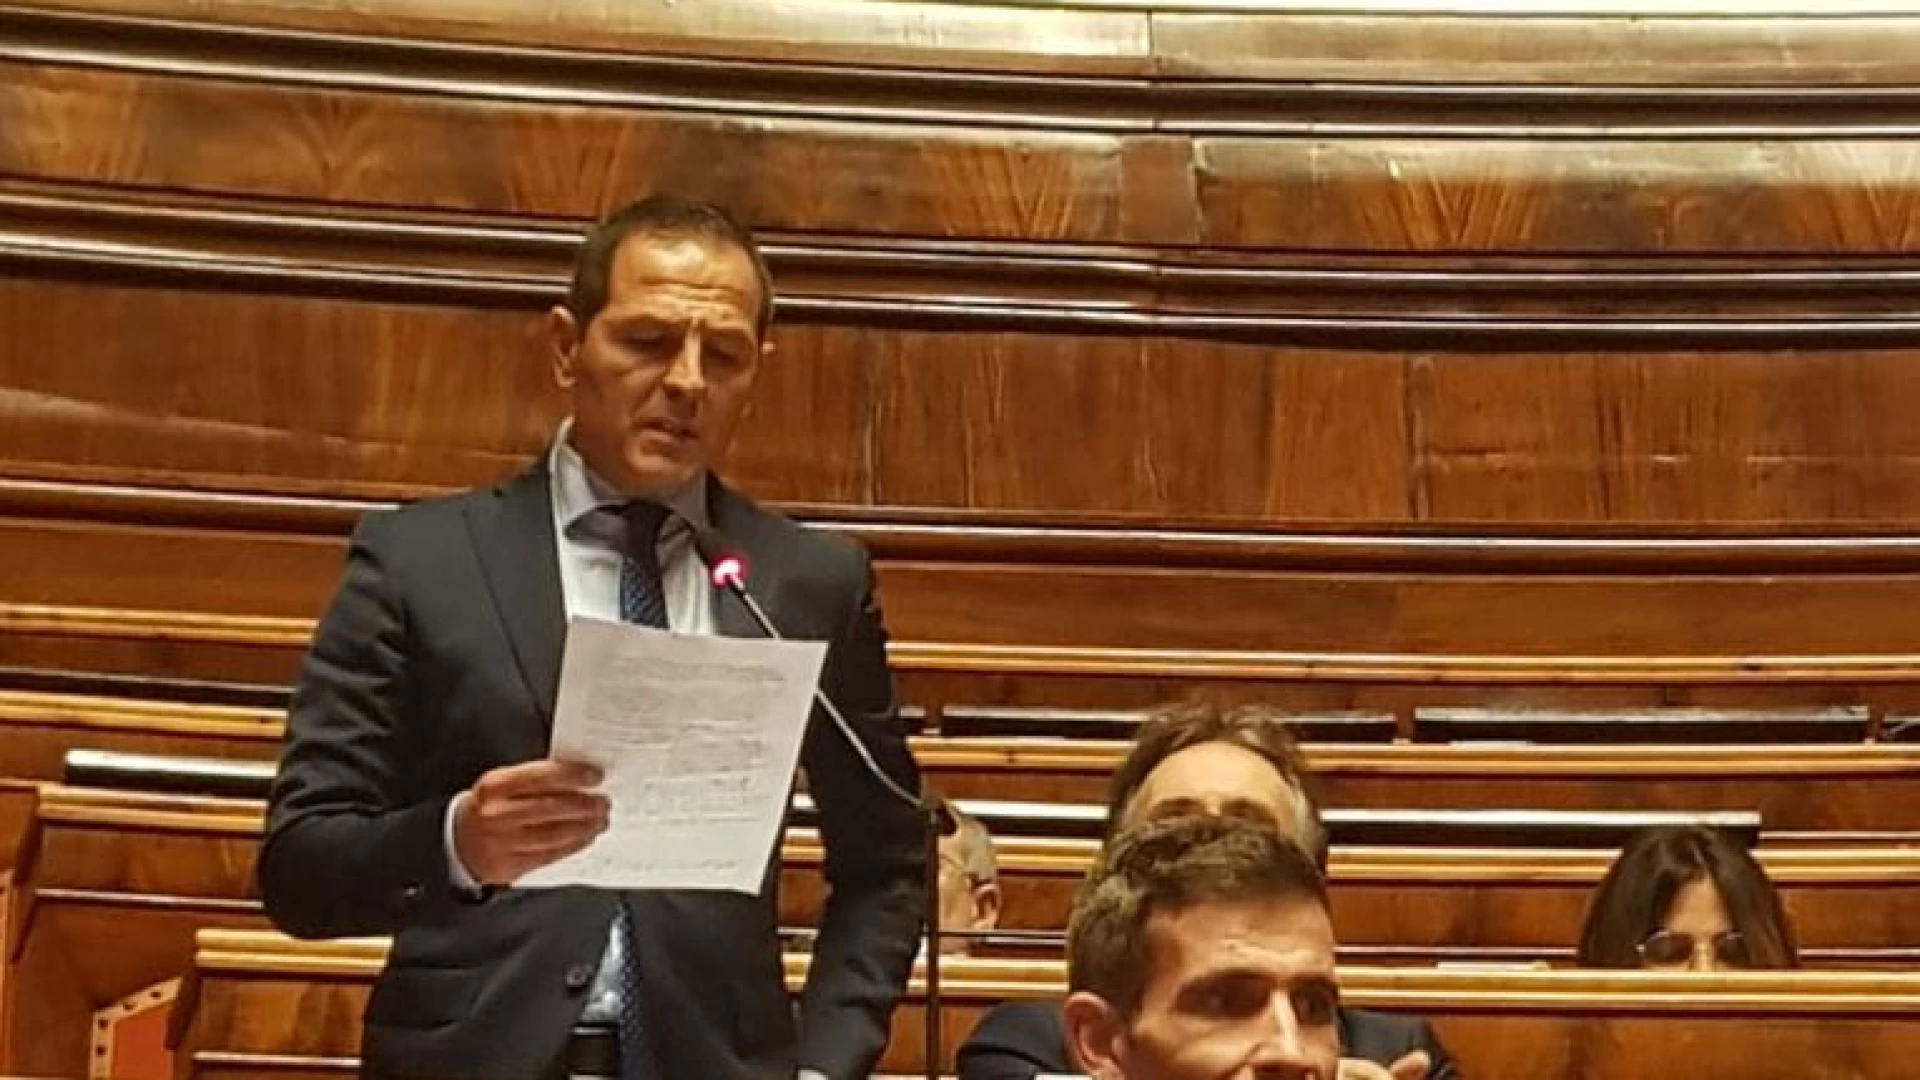 Della Porta-Fratelli d’Italia: “Riordino attribuzioni Ministeri”. L’intervento del senatore molisano in aula.